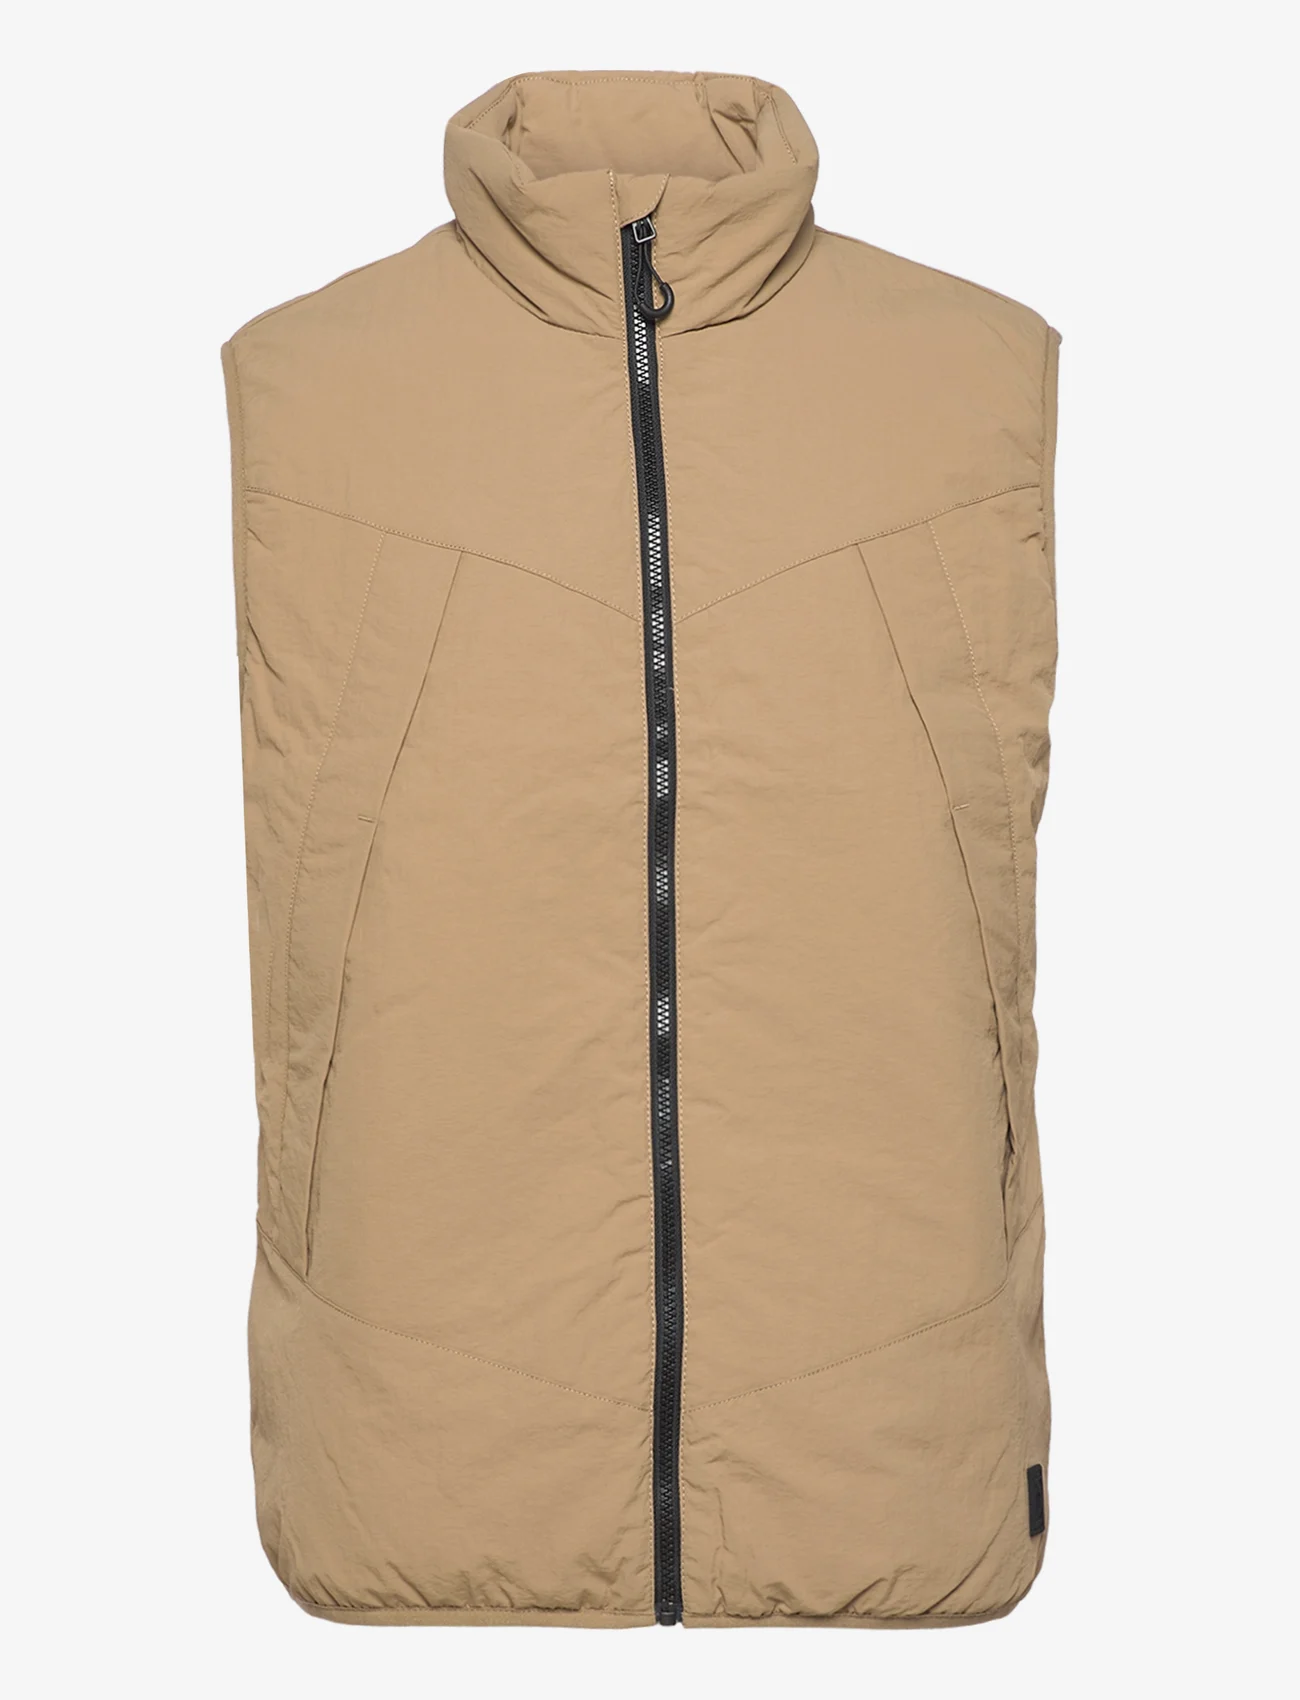 Tom Tailor - padded vest - vests - splashed clay beige - 0